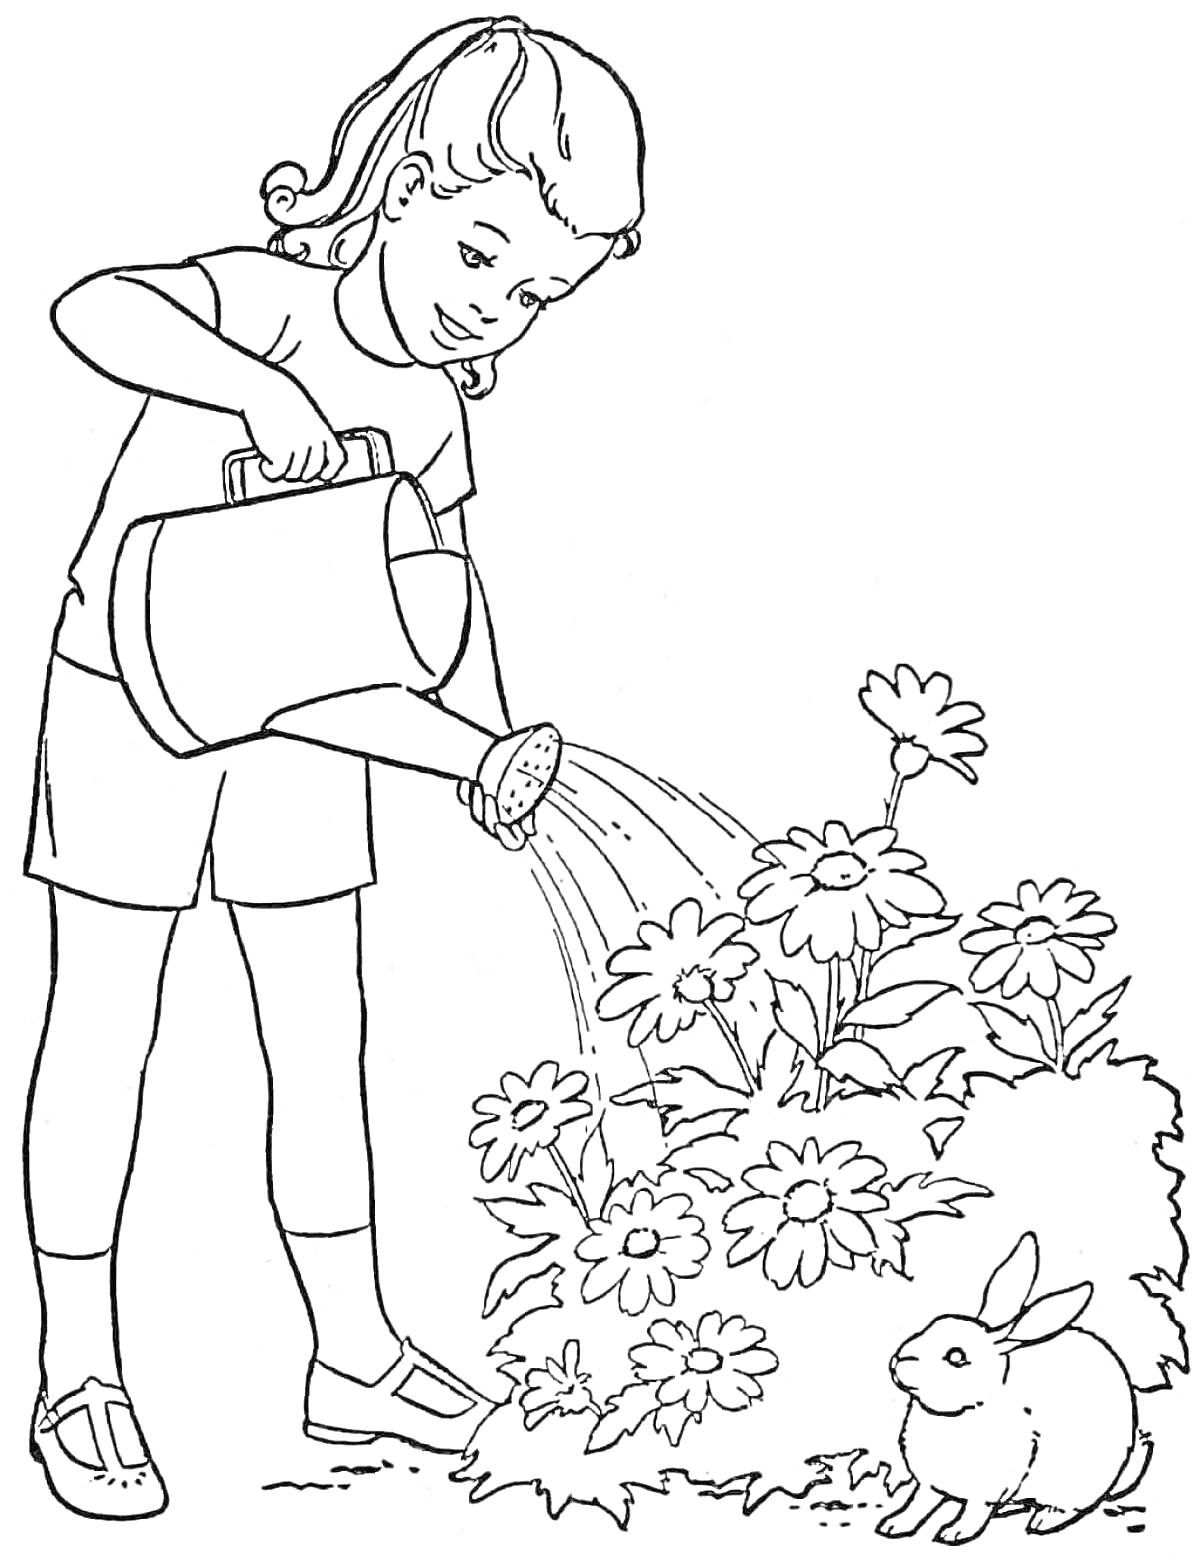 Раскраска Девочка поливает цветы рядом с кроликом